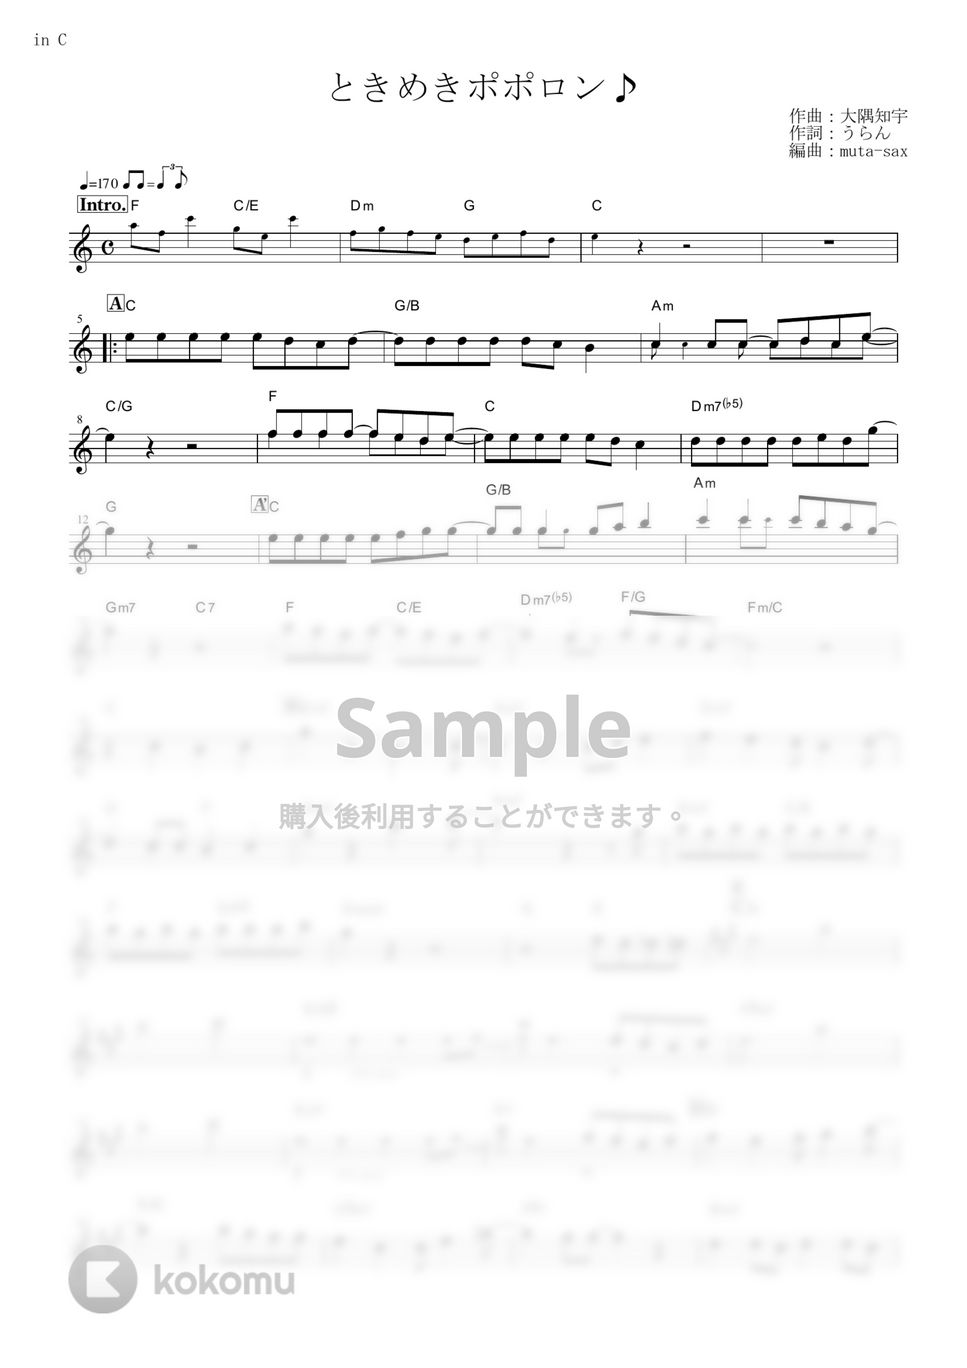 チマメ隊 - ときめきポポロン♪ (『ご注文はうさぎですか??』 / in C) by muta-sax